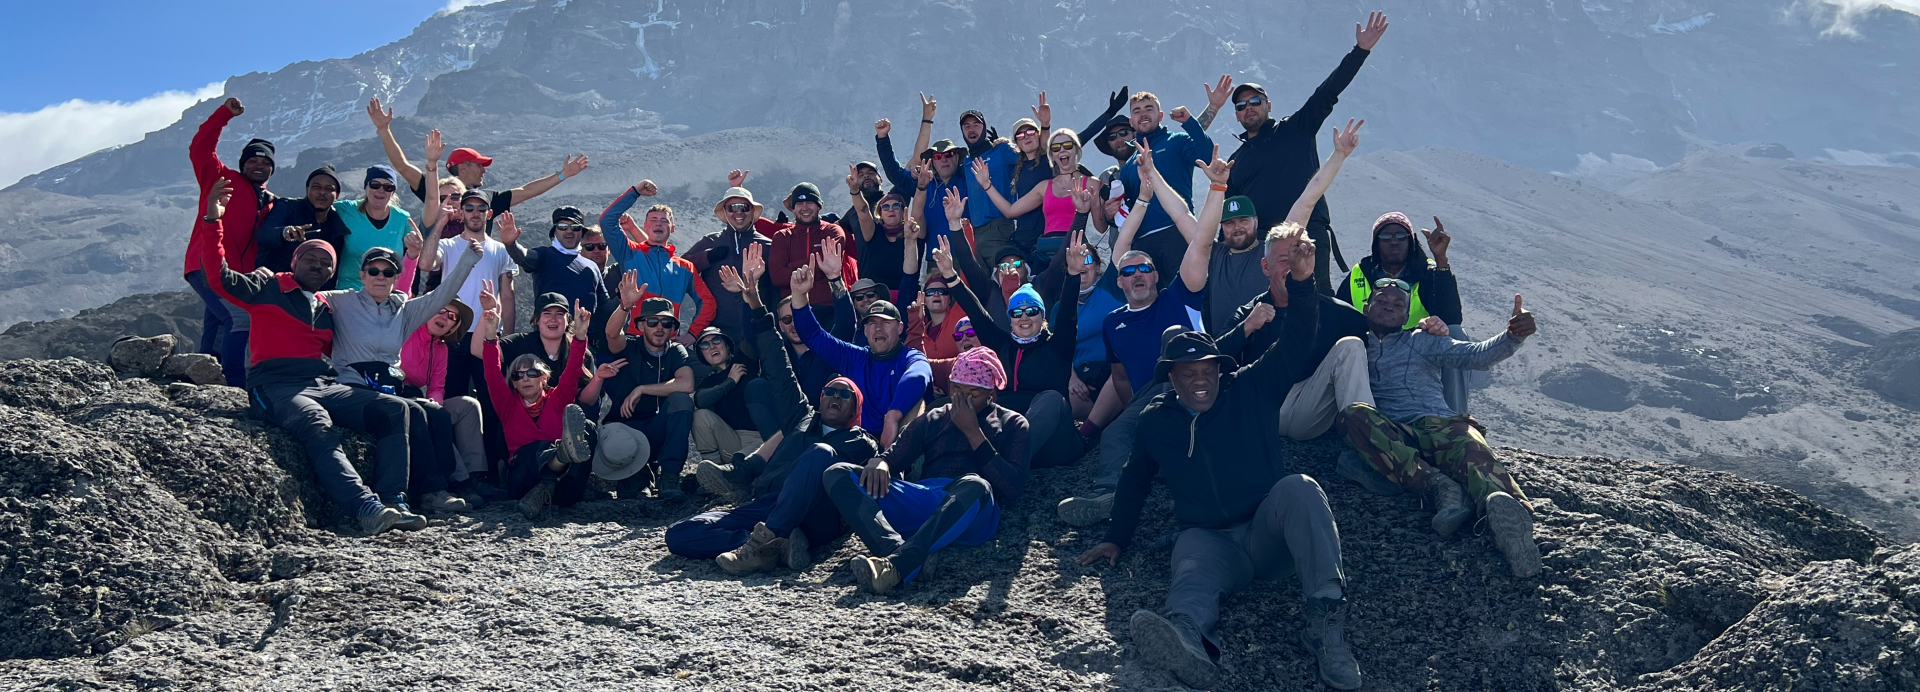 Jon Leonard climbs Kilimanjaro with Ultra Adventures